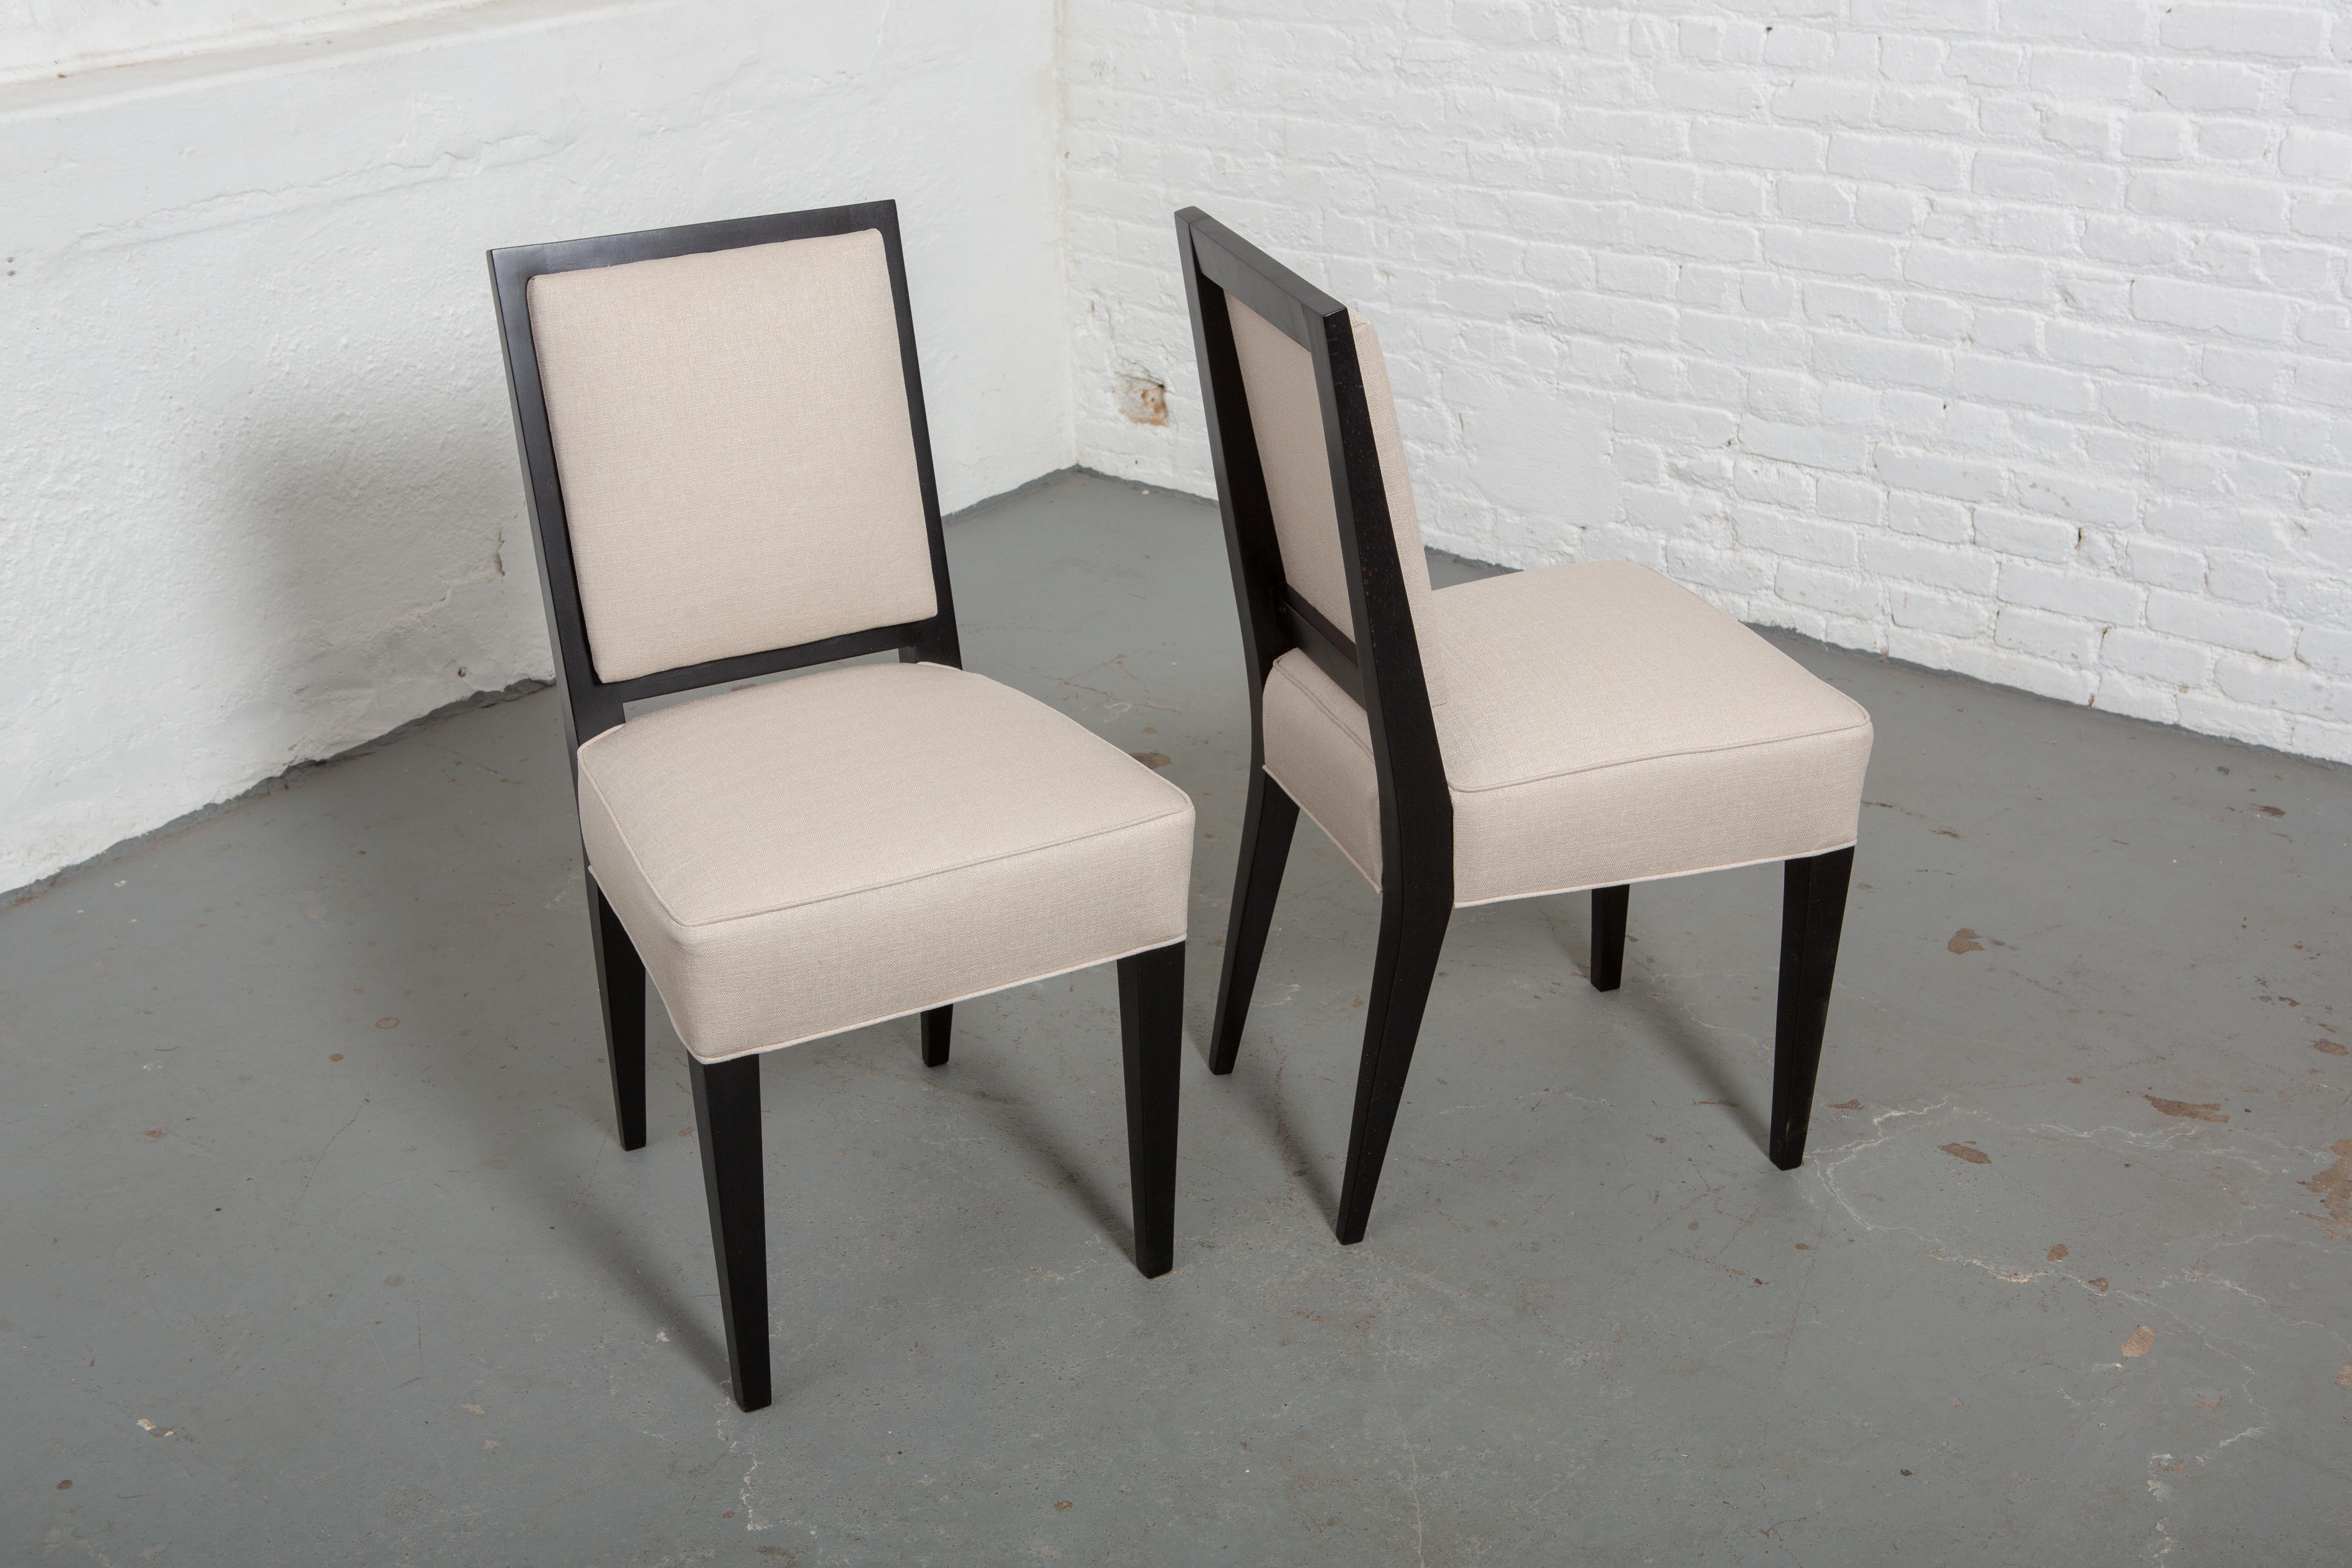 Satz von 6 neu gepolsterten und restaurierten französischen Stühlen im Art Deco-Stil aus Ebenholz mit cremefarbener Polsterung. Gerade Rückenlehne und leicht konisch zulaufende skulpturale Beine. 
Maßnahmen: 15.5